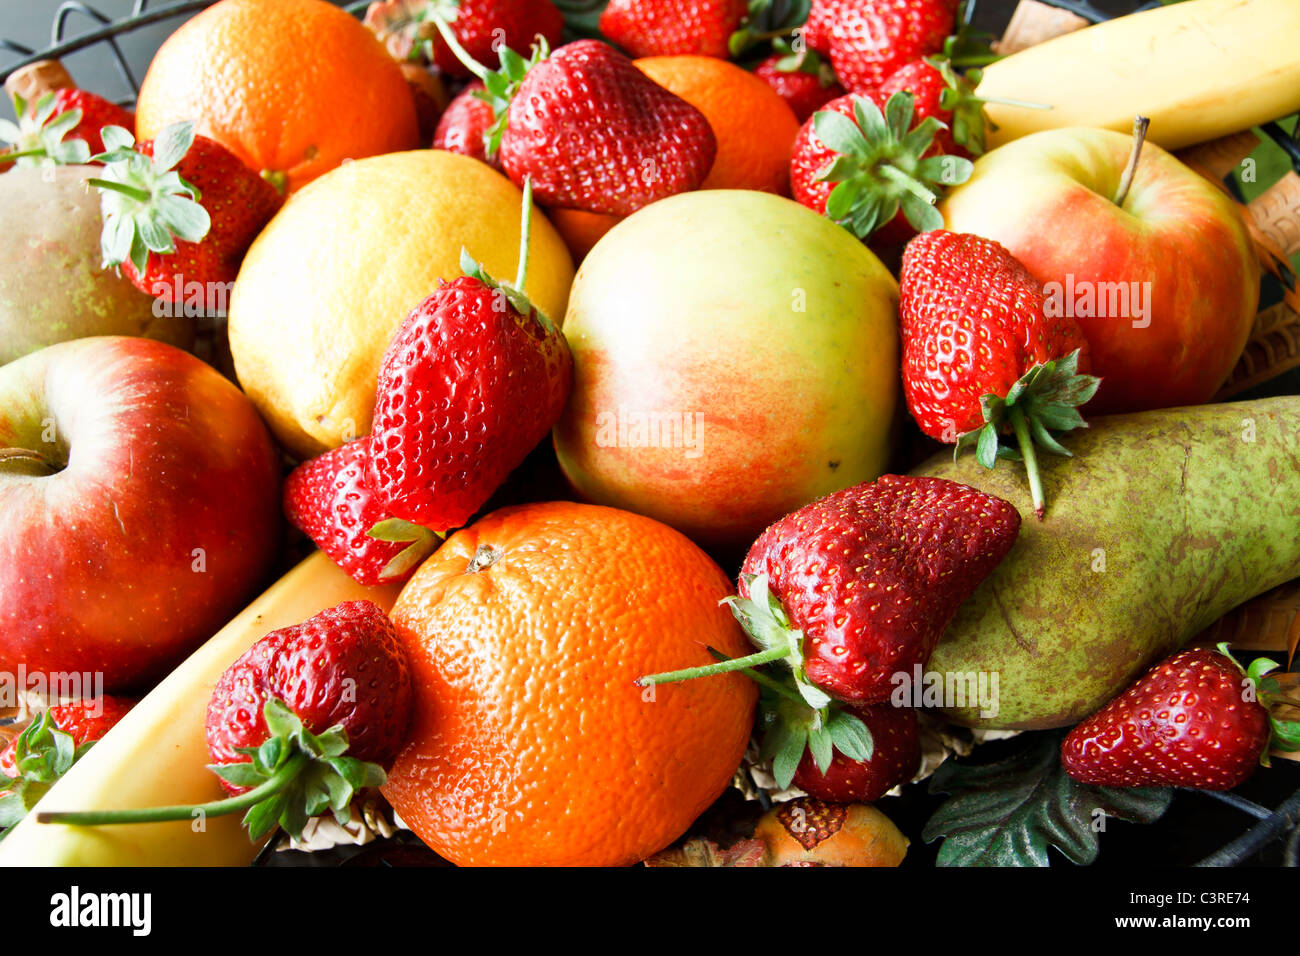 Früchte in der Nähe, Erdbeeren, Äpfel, Zitronen, Orangen, Bananen Stockfoto